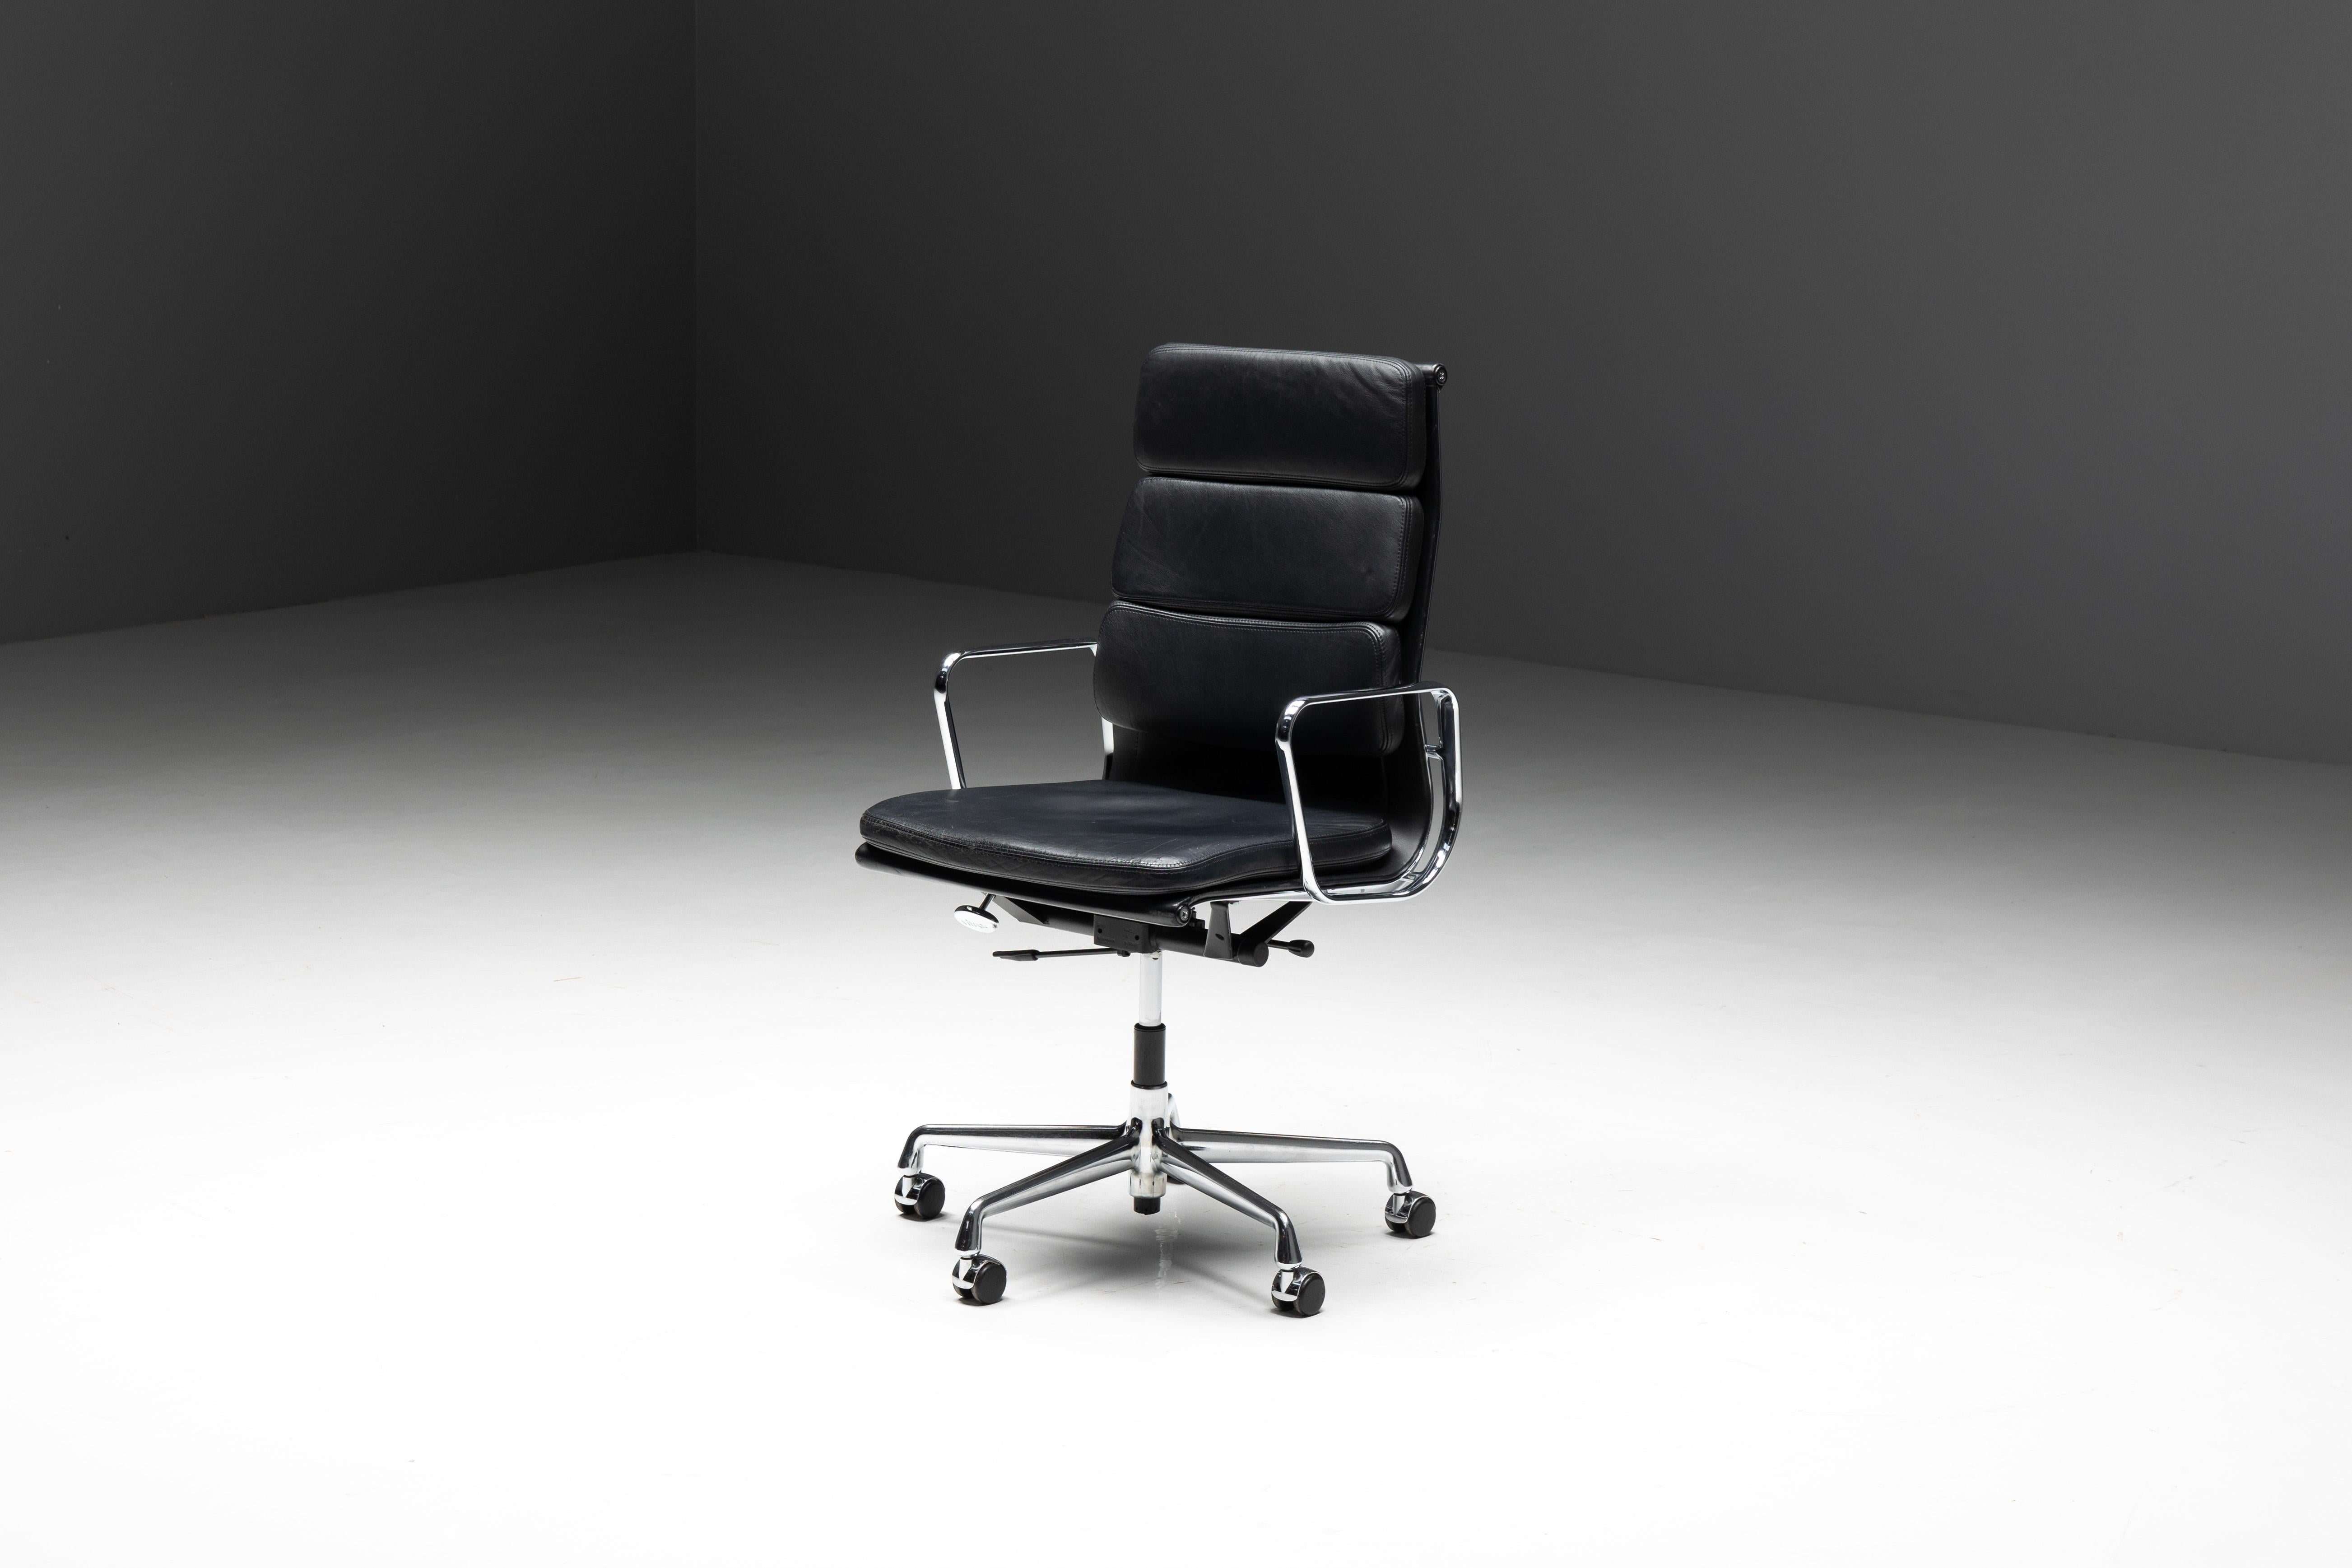 Charles und Ray Eames EA216 Softpad Bürostuhl, hergestellt von Vitra. Sitz und Rückenlehne dieses eleganten Stuhls sind aus schwarzem Leder gefertigt. Das verchromte Gestell und die Armlehnen verleihen ihm eine zeitlose Ästhetik. Er ist schwenkbar,